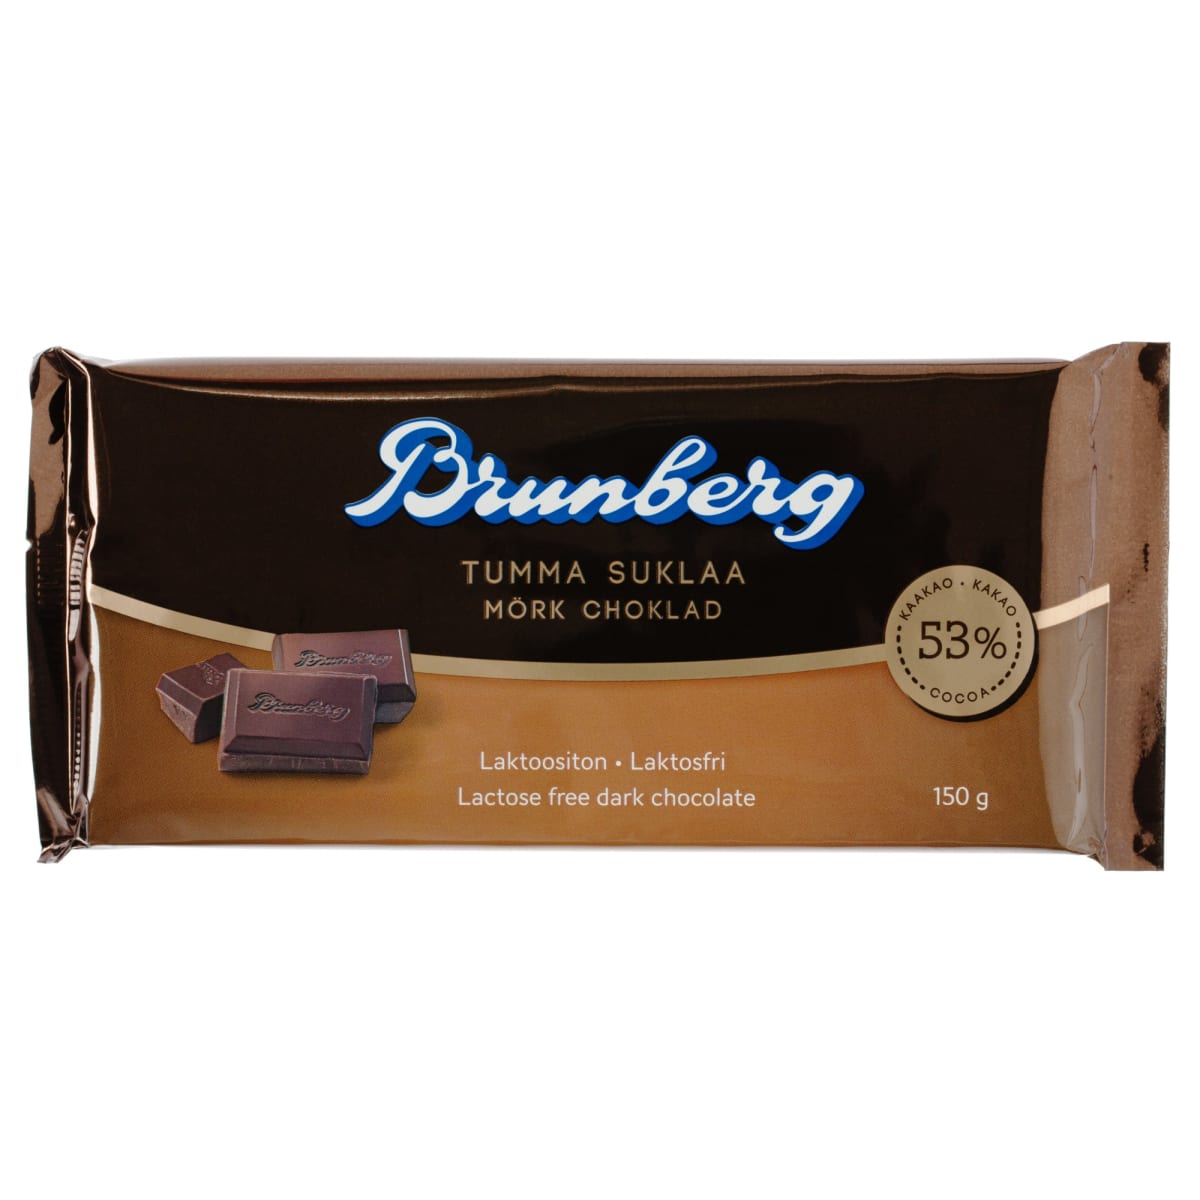 Brunberg 53 % tumma suklaa 150 g levy  verkkokauppa